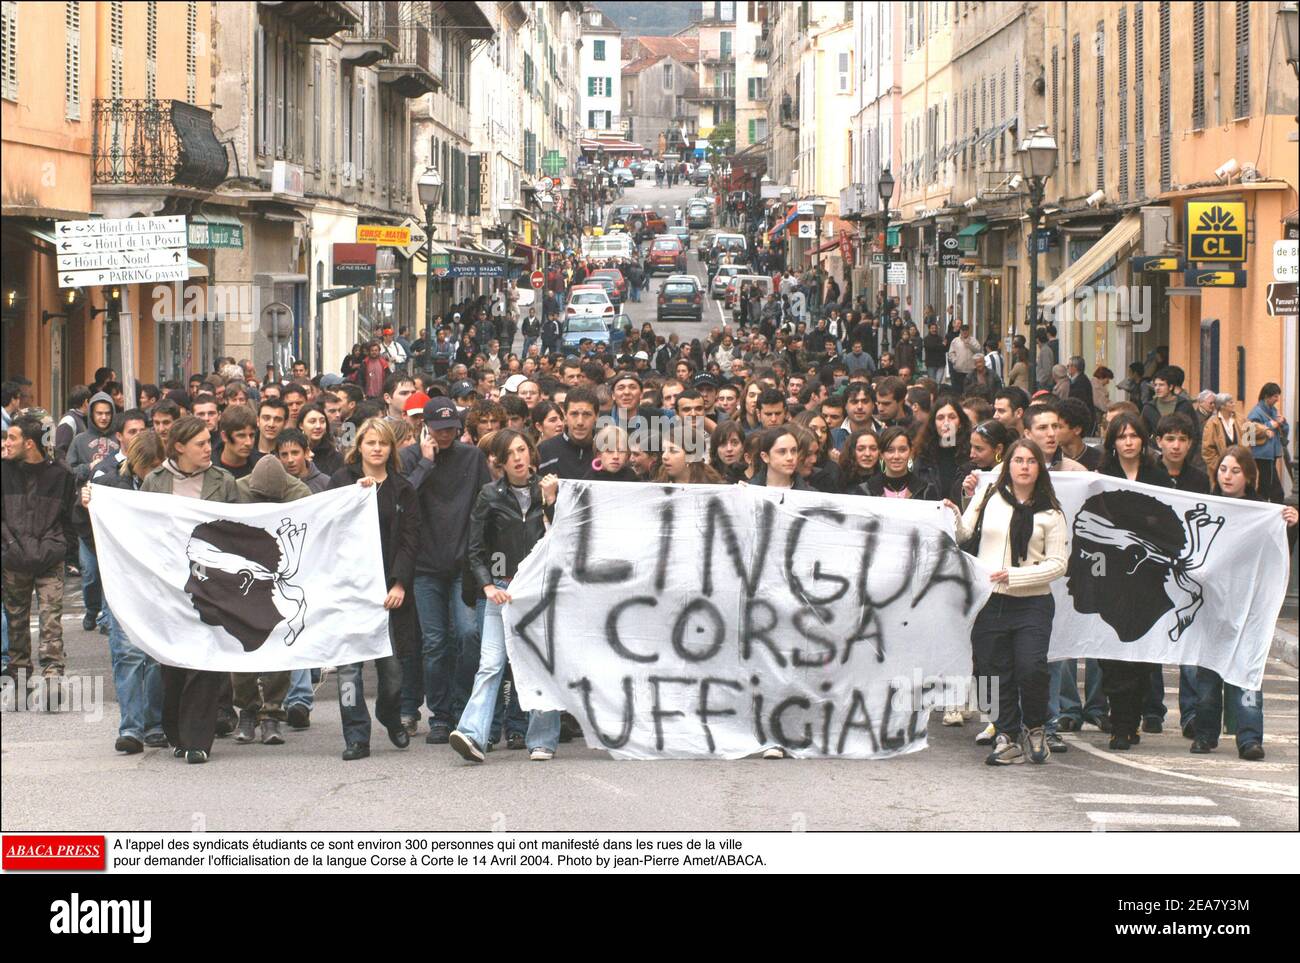 A l'appel des syndicats tudiants ce sont environ 300 personnes qui ont manifest dans les rues de la ville pour demander l'officialisation de la langue Corse ˆ Corte le 14 Avril 2004. Photo by jean-Pierre Amet/ABACA. Stock Photo